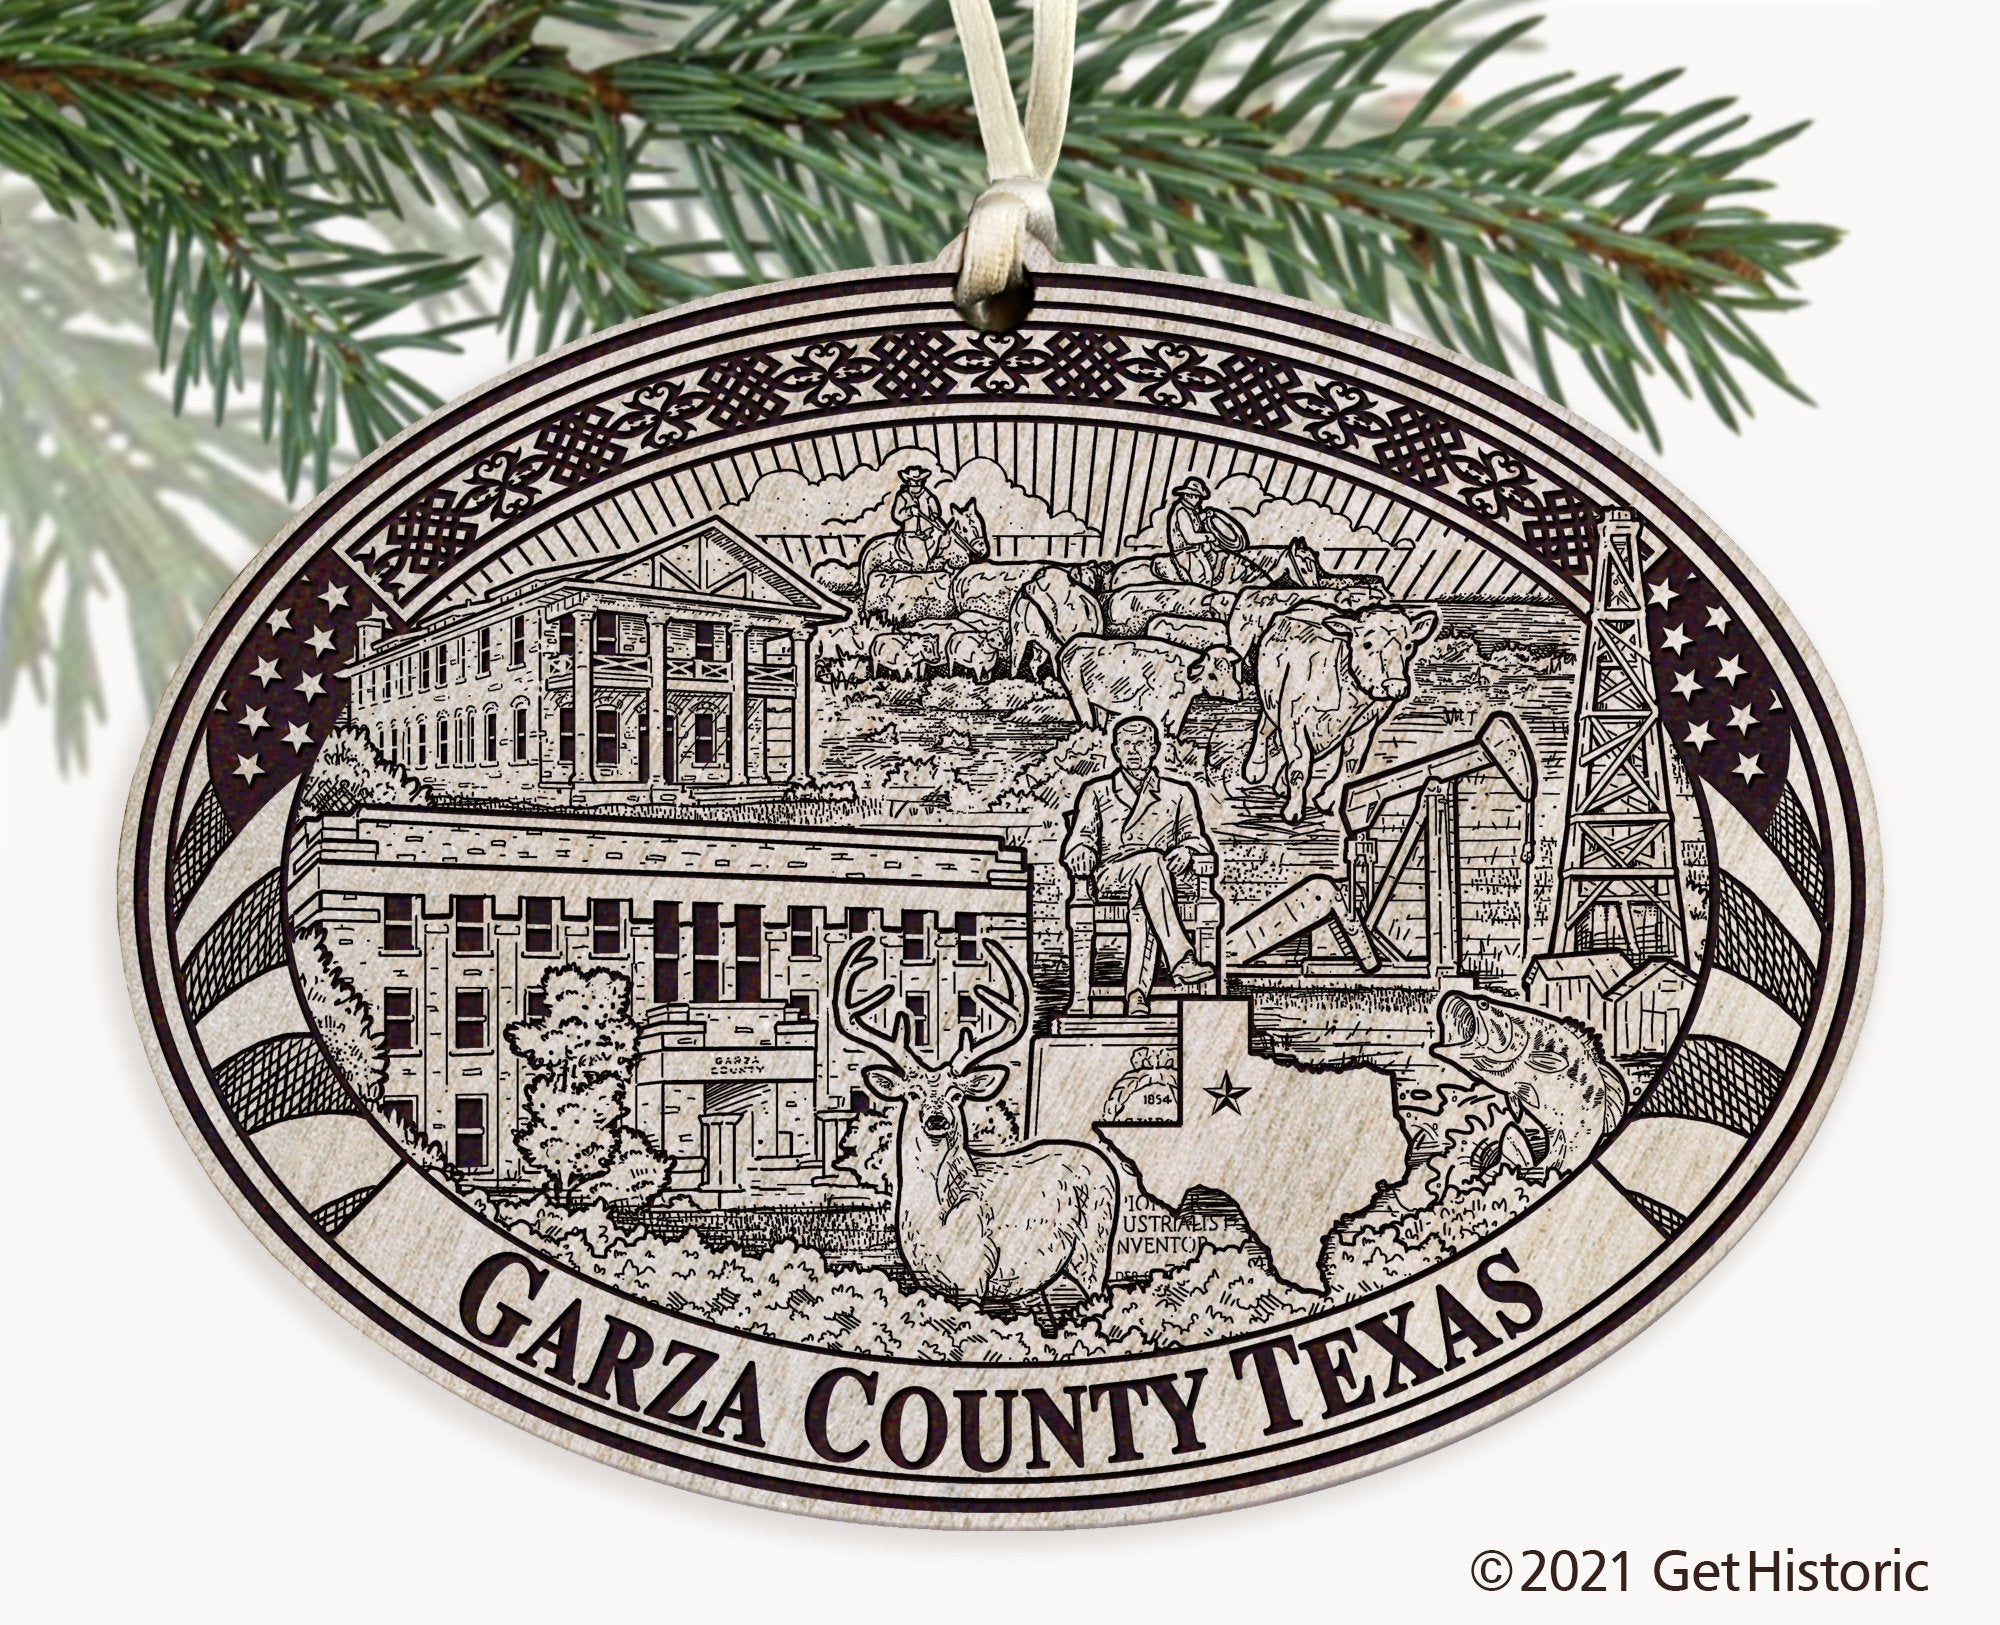 Garza County Texas Engraved Ornament